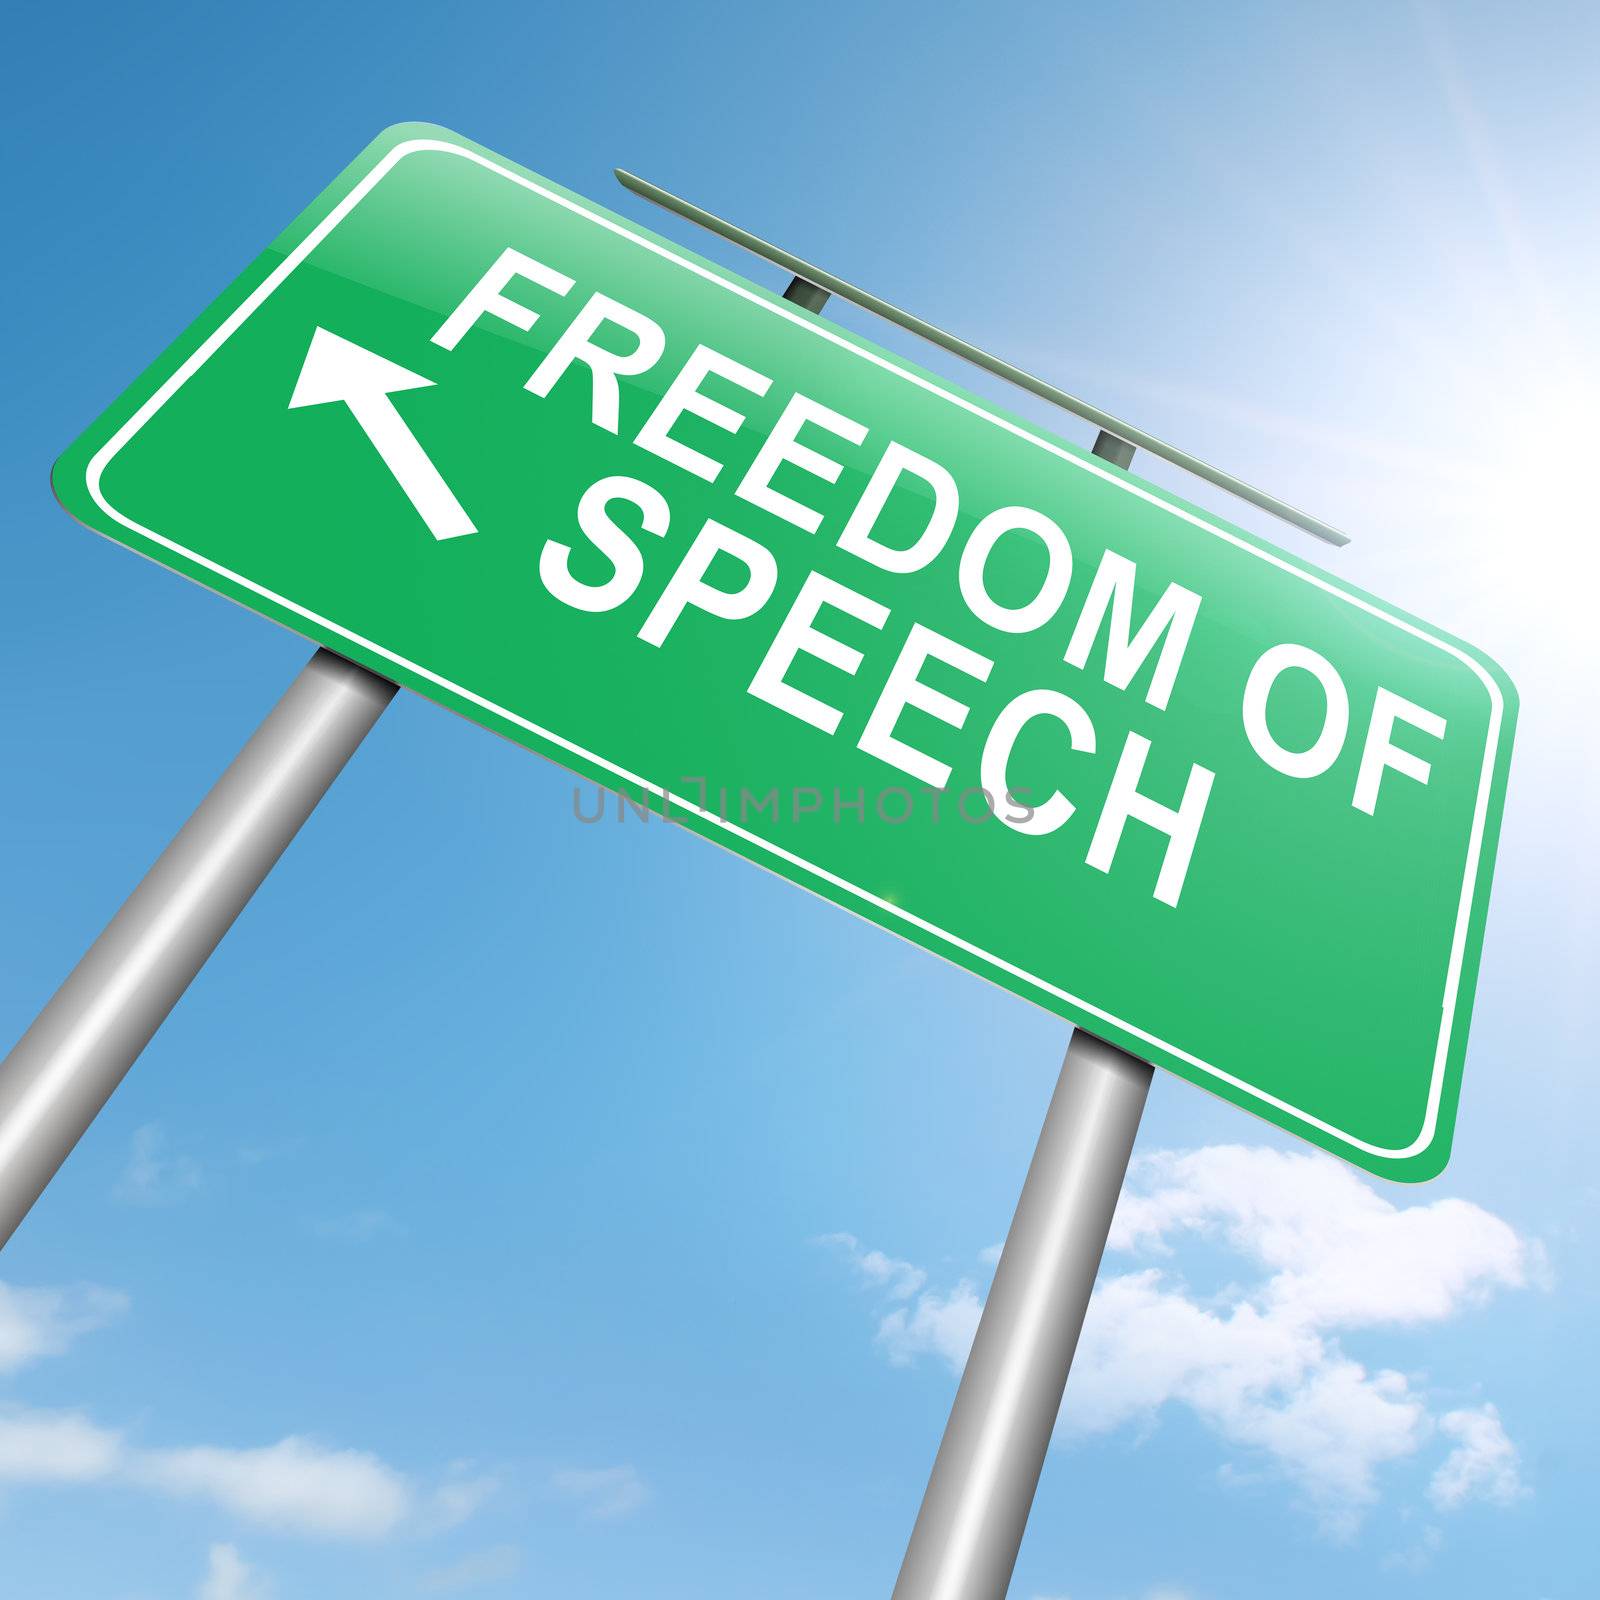 Freedom of speech. by 72soul